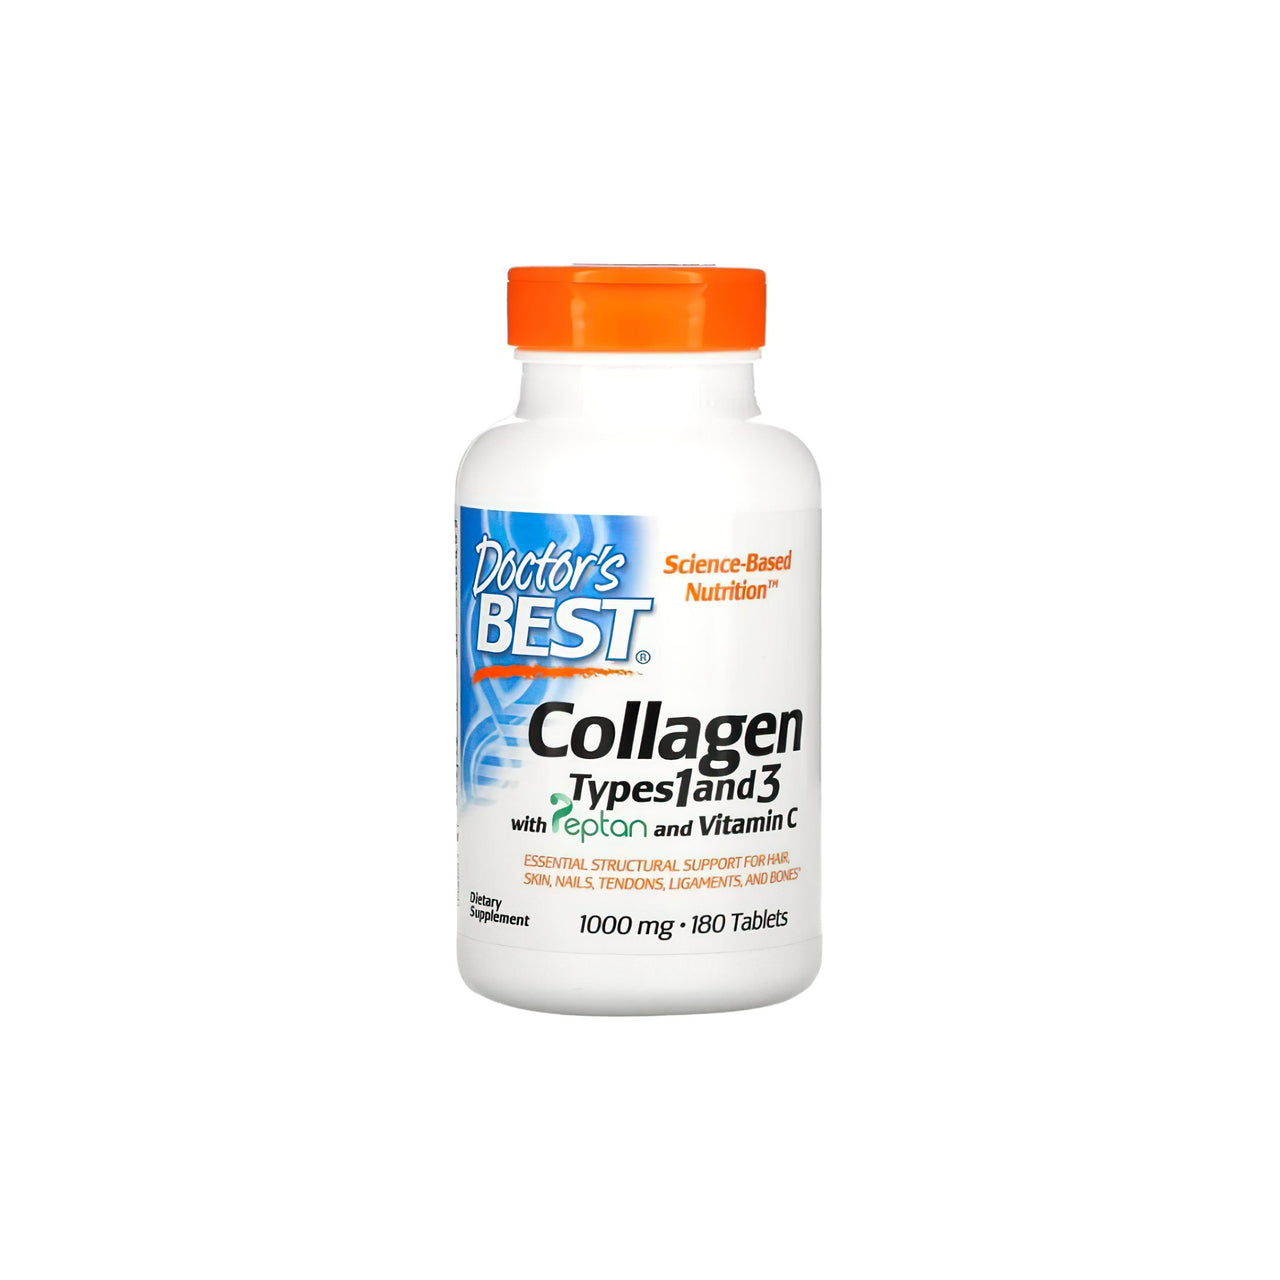 Une bouteille de Doctor's Best Collagen types 1 et 3 1000 mg 180 comprimés, le meilleur supplément de collagène.